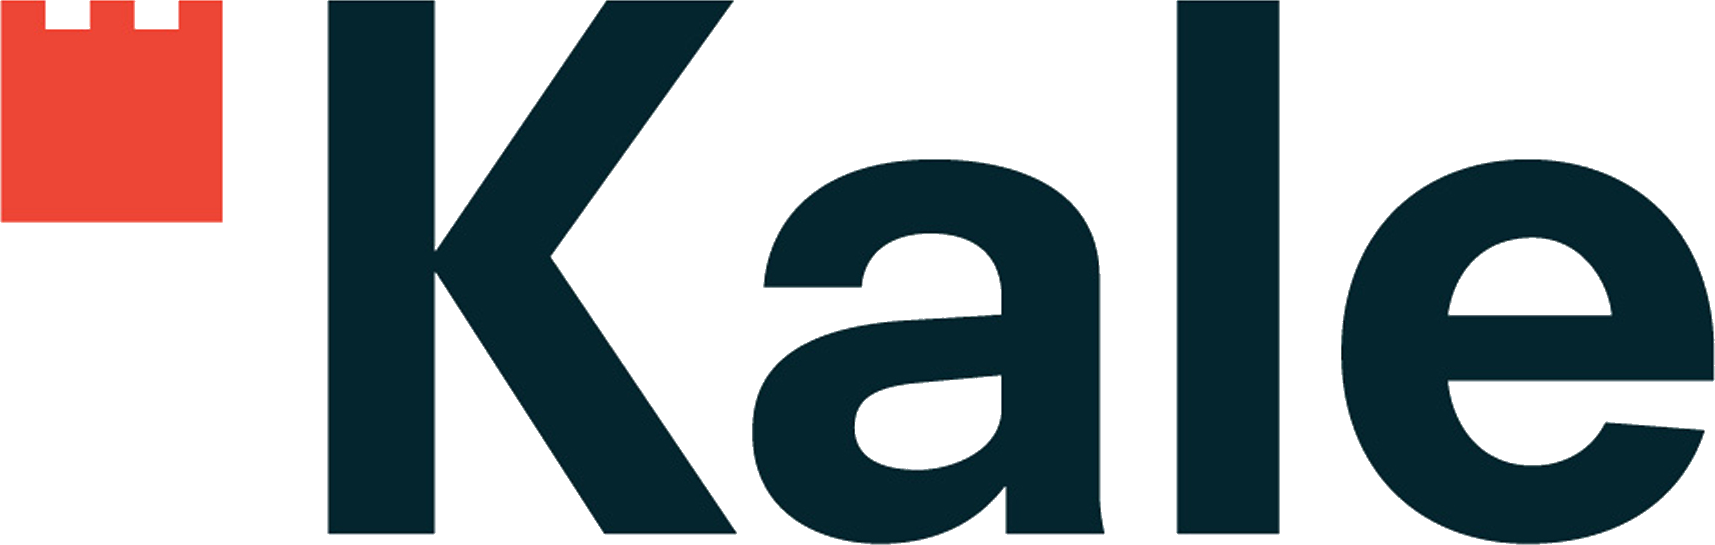 Kale Seramik Brand Logo